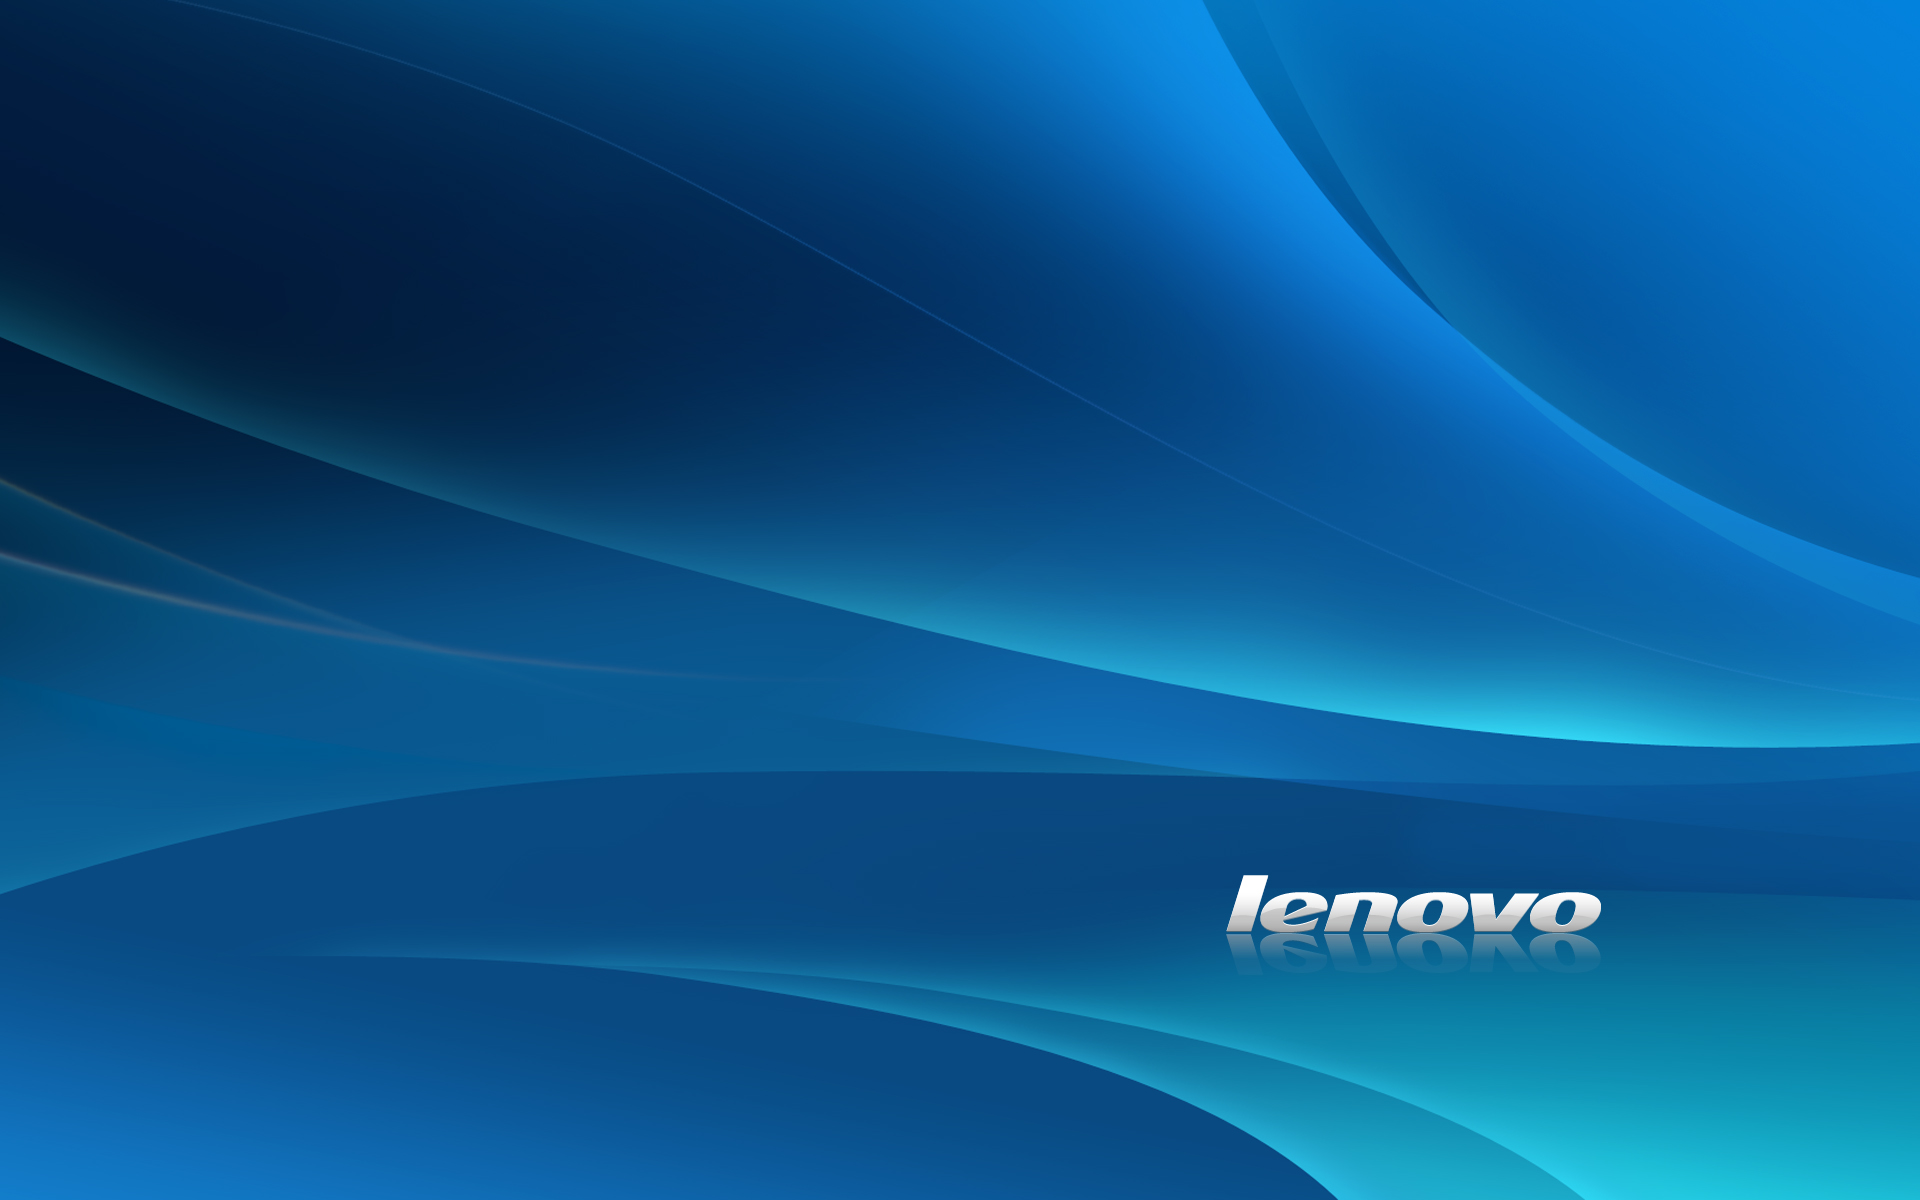 Lenovo Wallpaper 1080P - WallpaperSafari